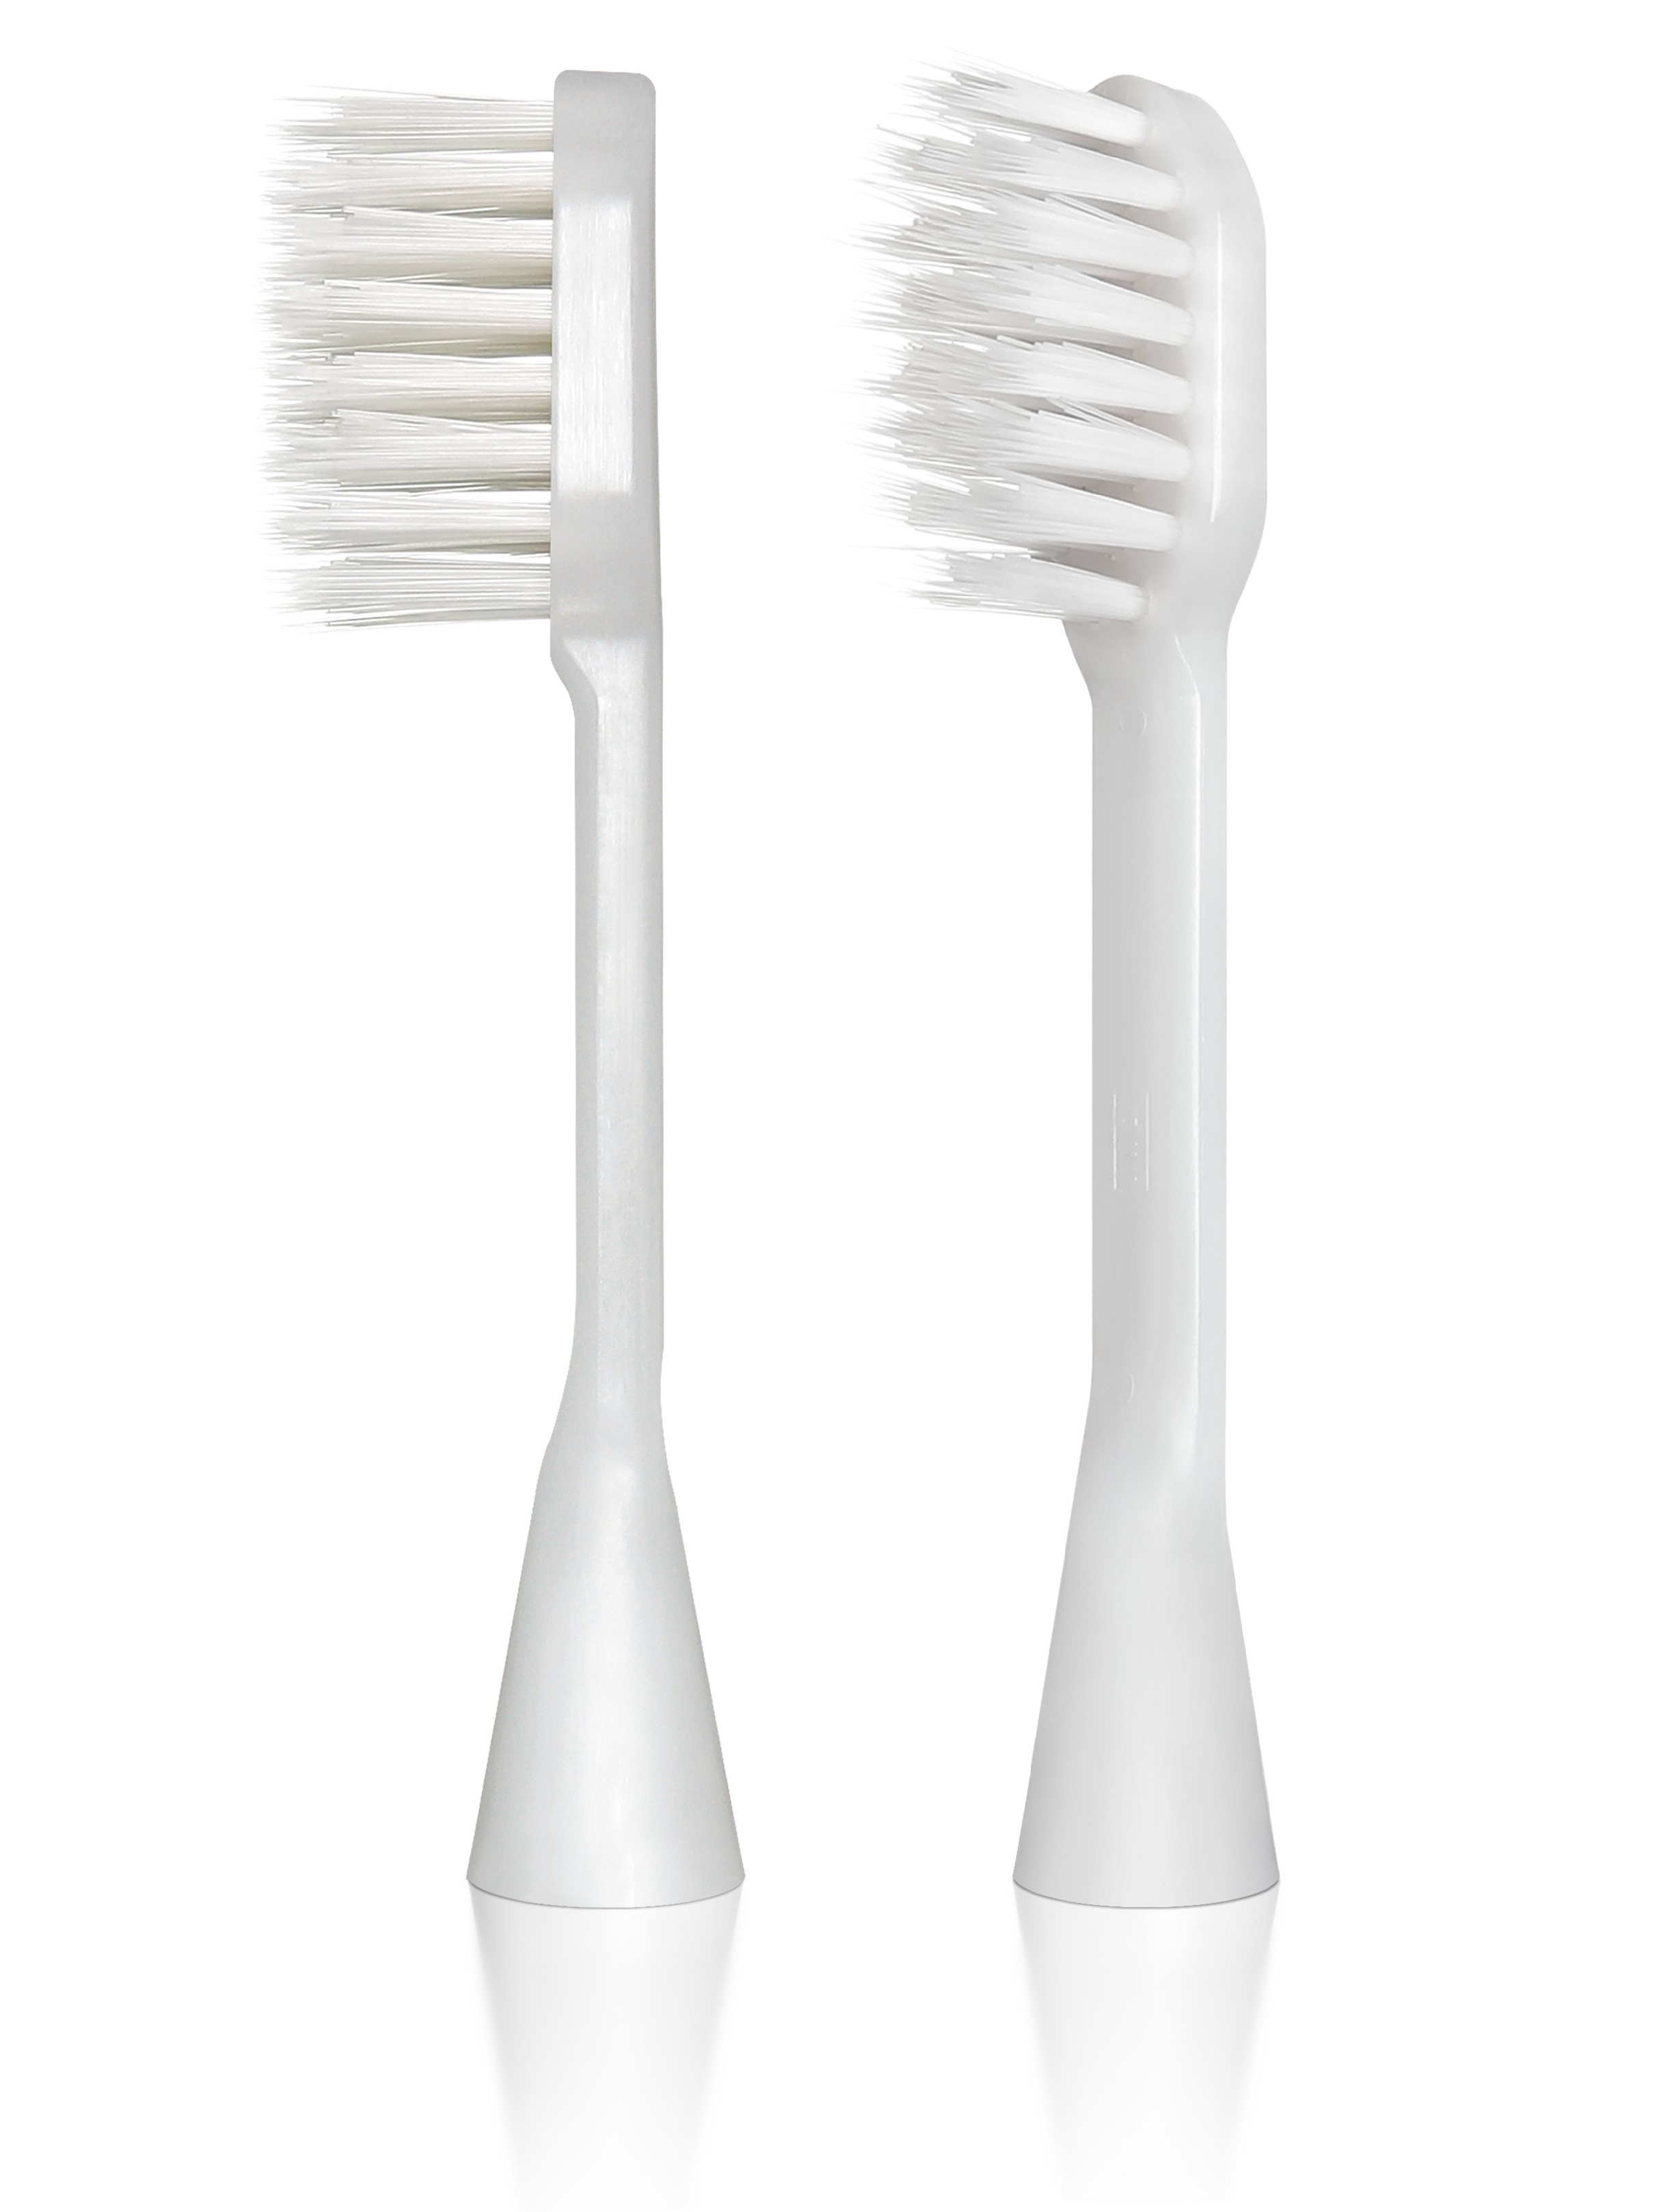 Cменные ионные насадки для электрической зубной щетки Hapica BRT-9 2 шт. насадки для электрической зубной щетки lumi dorothy арт 122 ml012